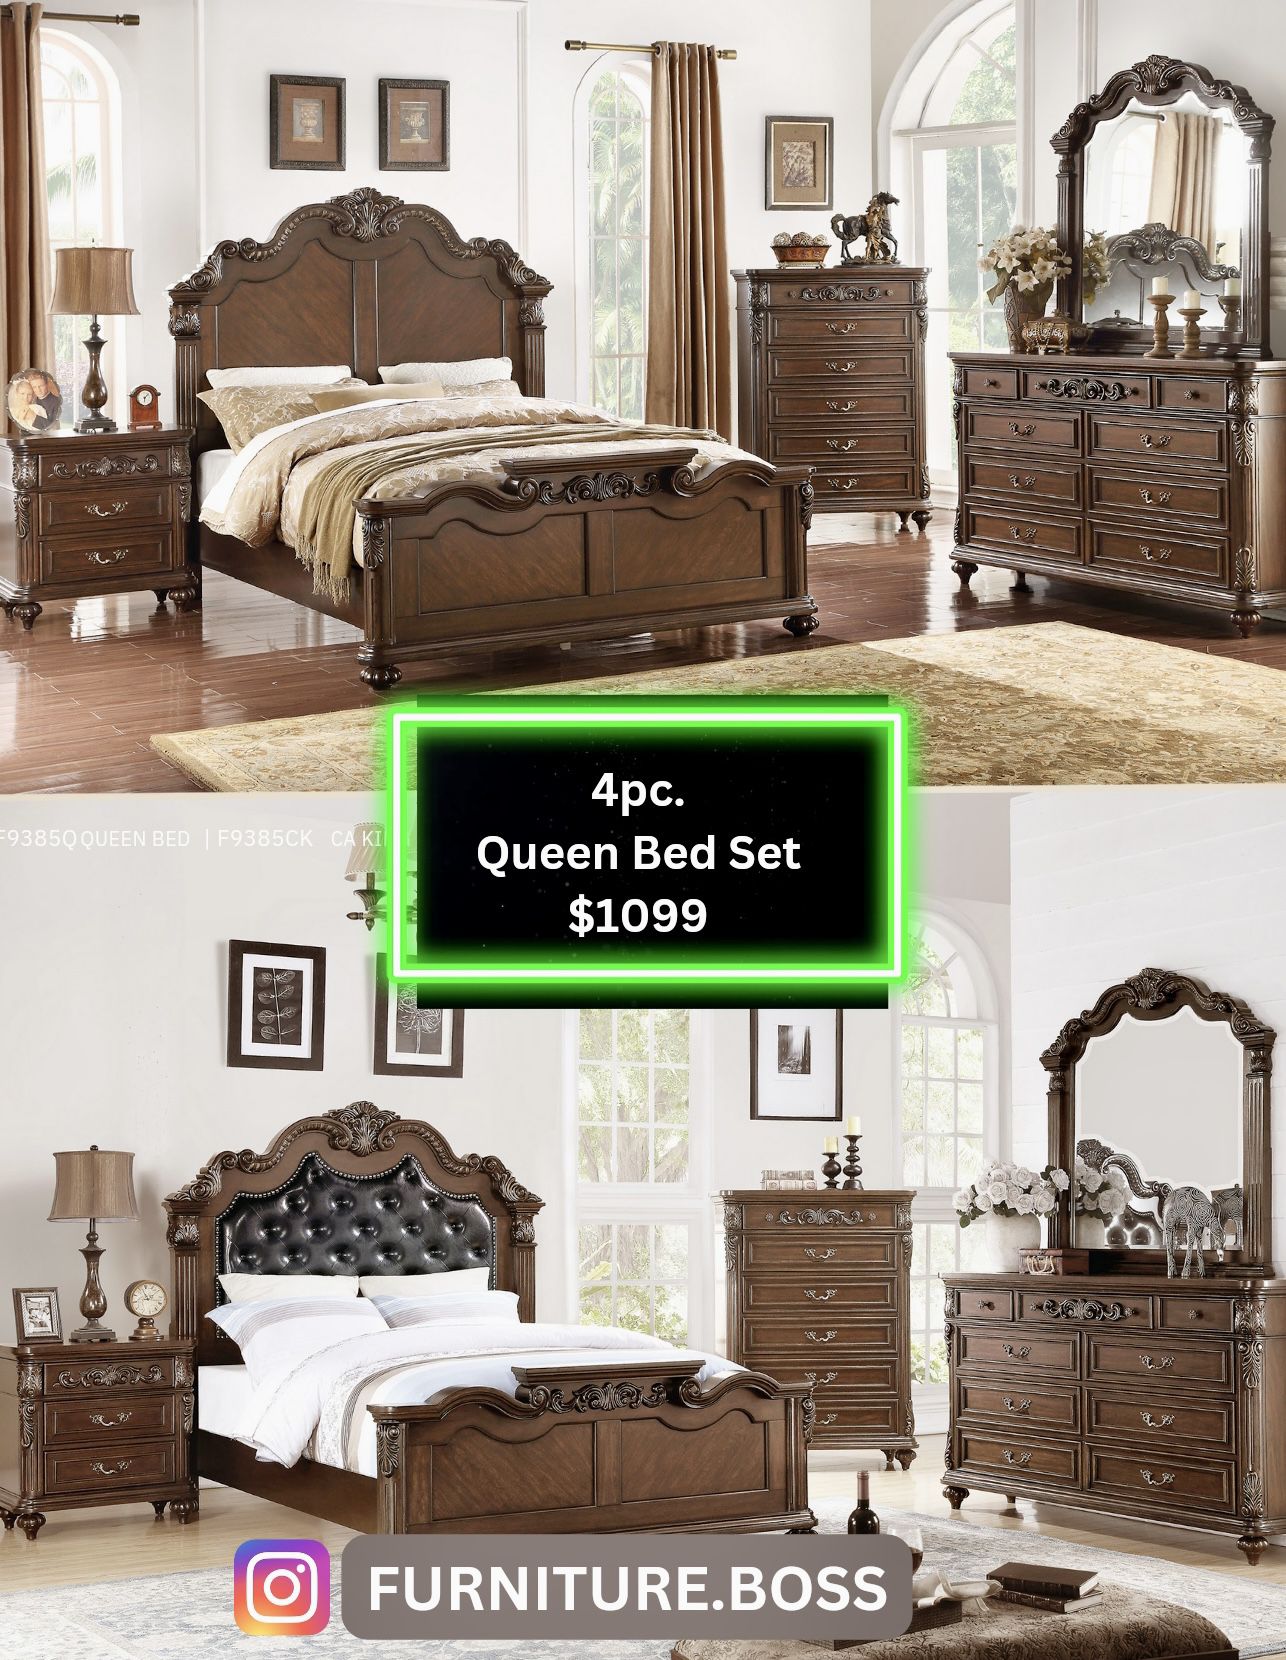 Queen Bedroom - 4pc Set Bed, Dresser, Mirror, Nightstand $1099